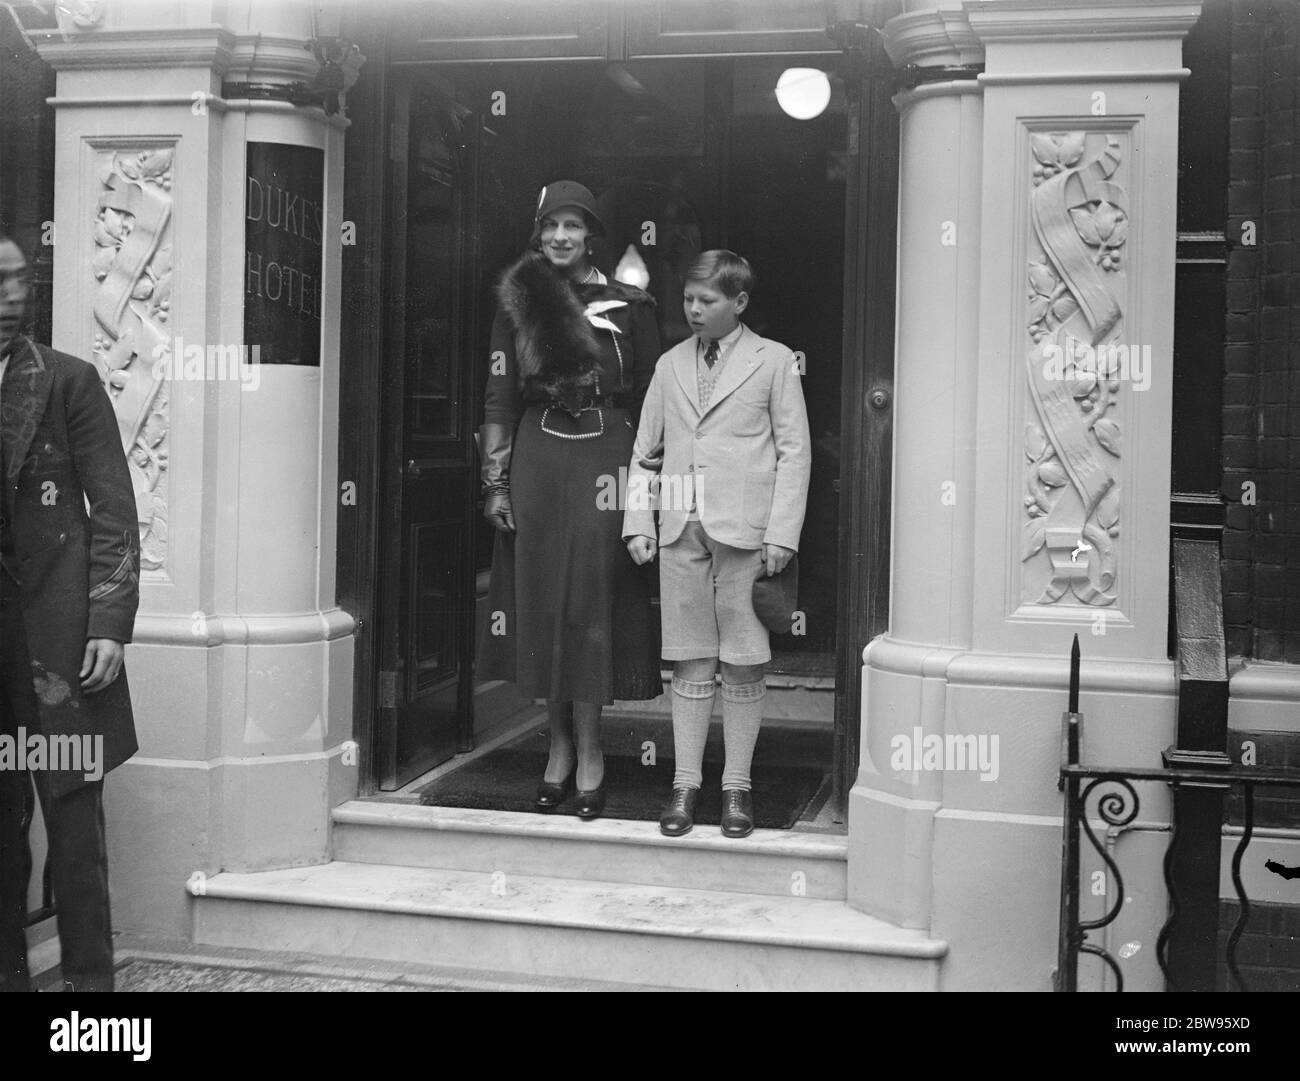 Junge Prinz Michael von Rumänien in London. Der zehnjährige Kronprinz Michael von Rumänien, der gerade in London angekommen ist, um seine Mutter, die Prinzessin Helen, zu besuchen, verlässt ihr Hotel in London für eine Besichtigungstour. 23. September 1932 Stockfoto